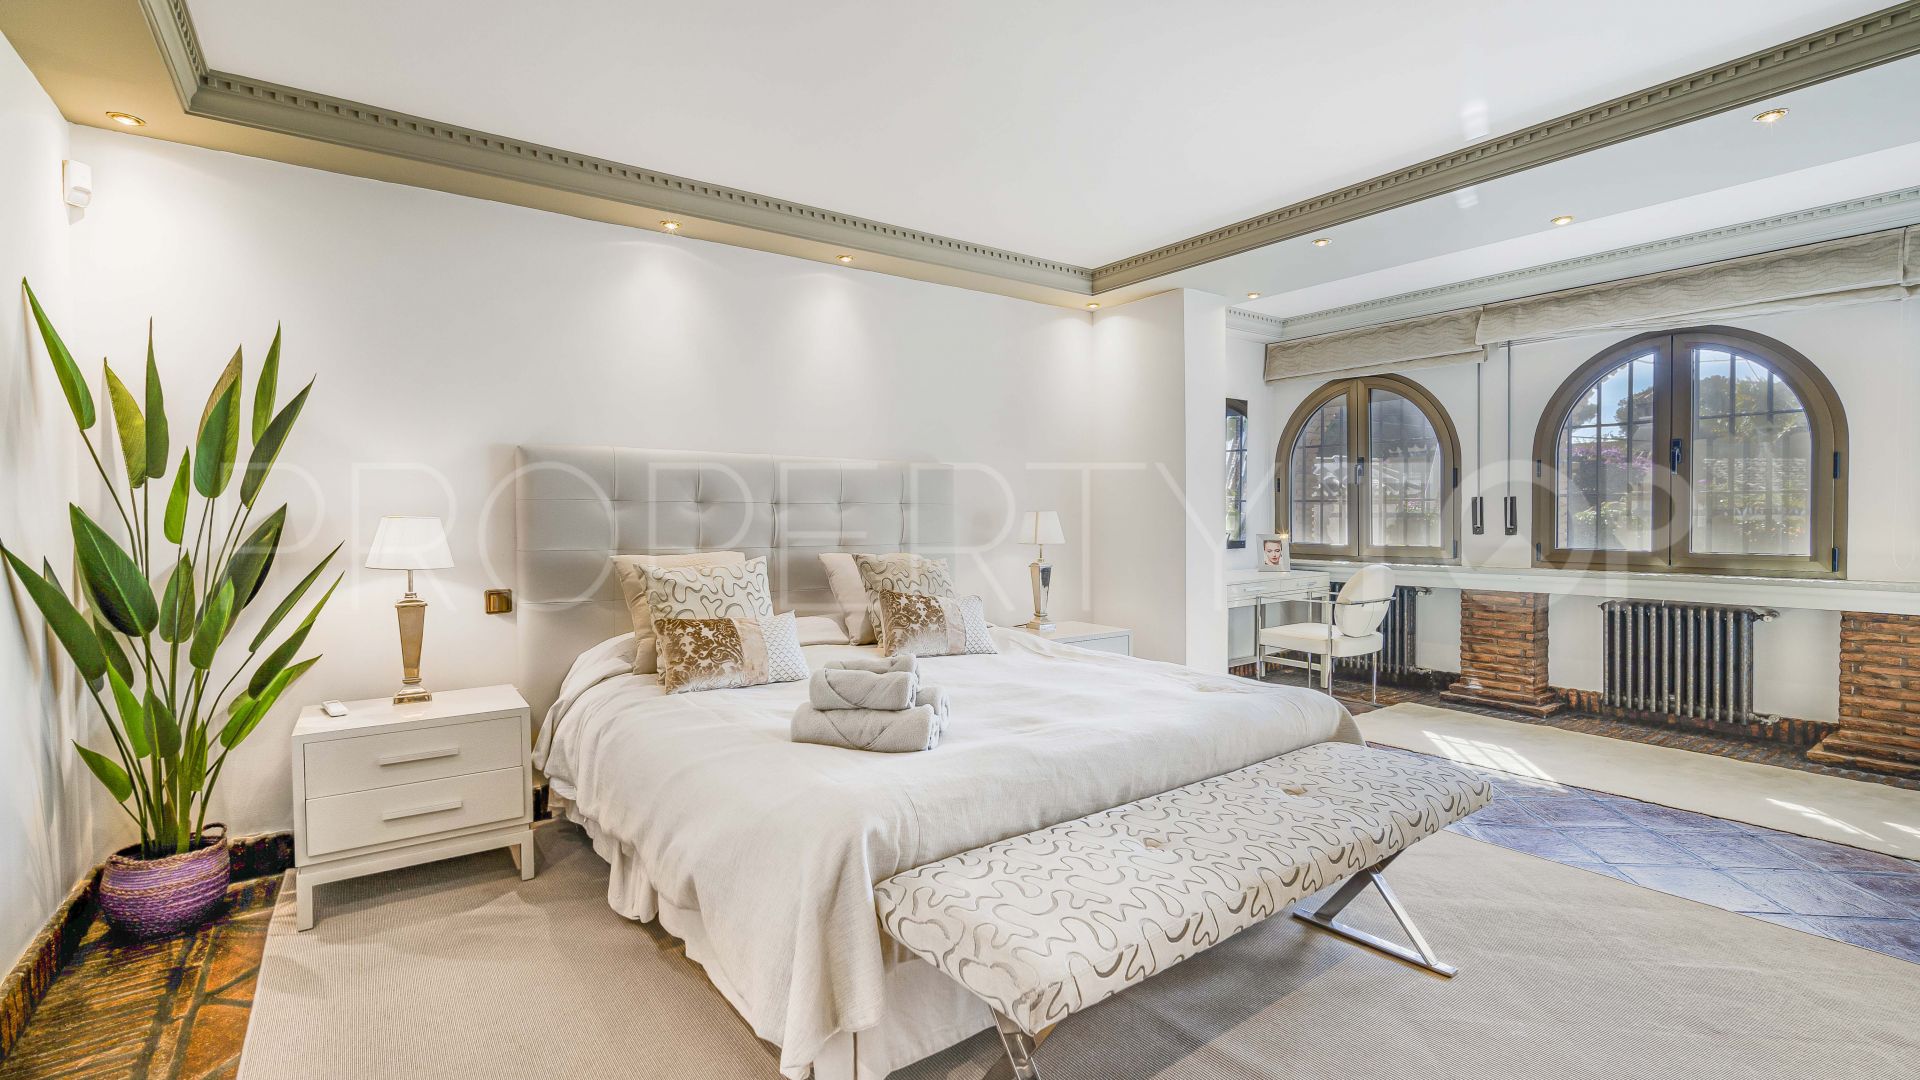 4 bedrooms villa in Costabella for sale